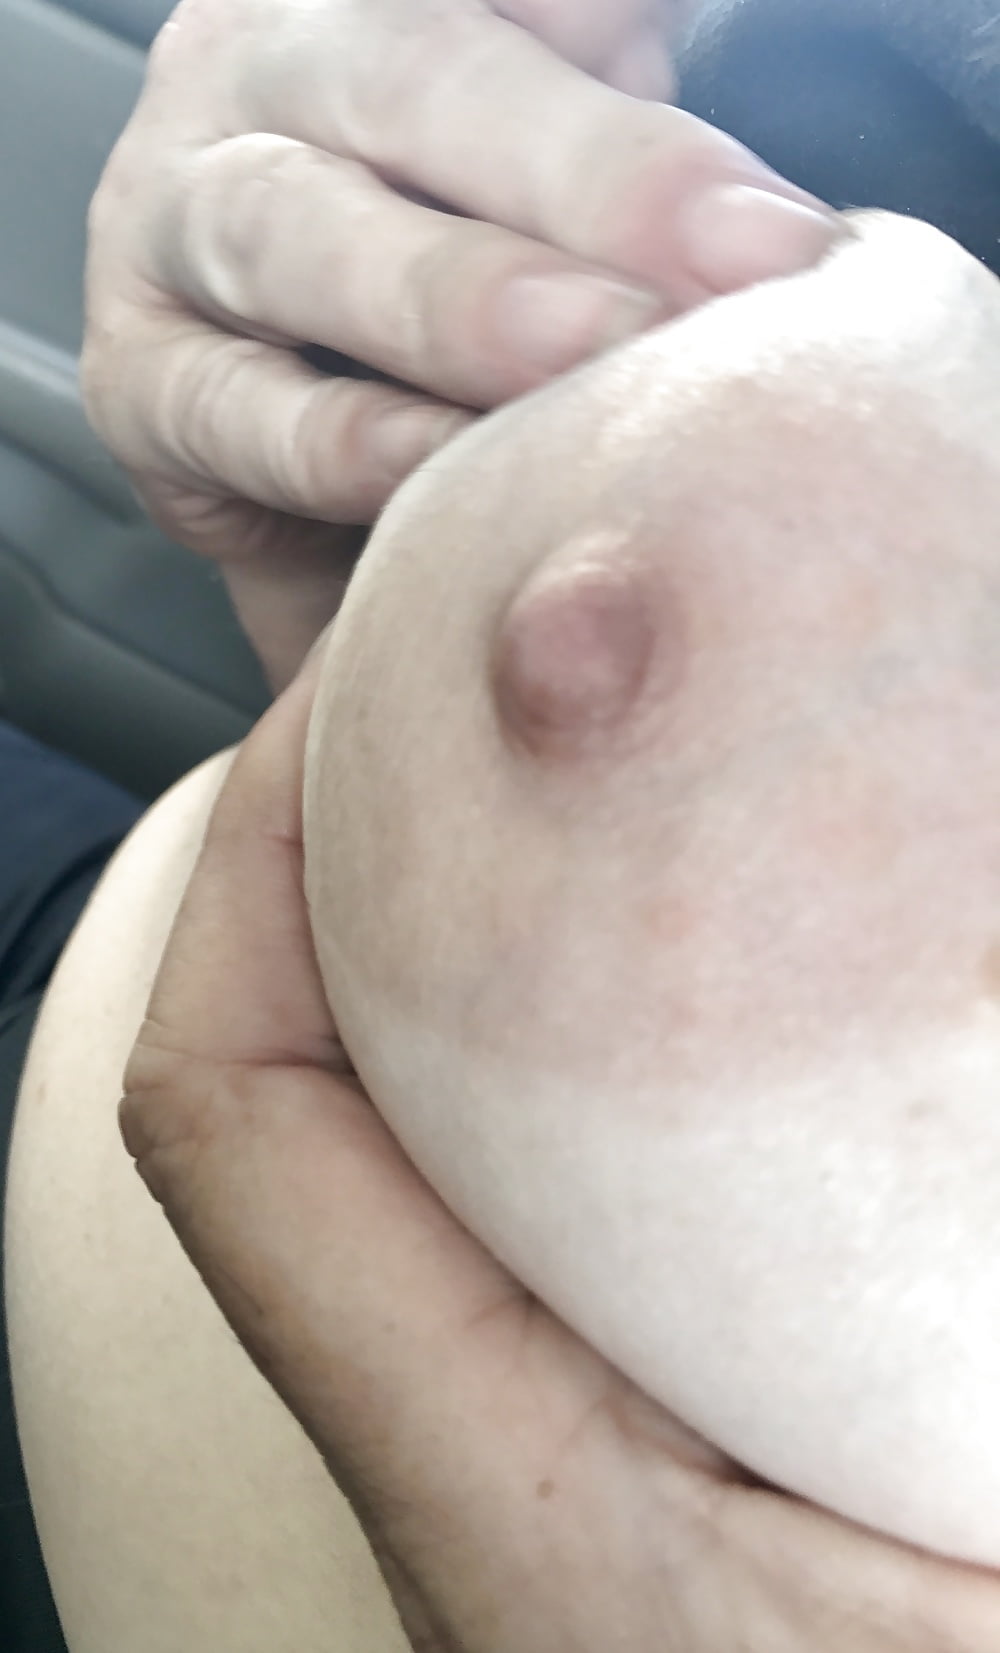 Inverted nipple and big nipple